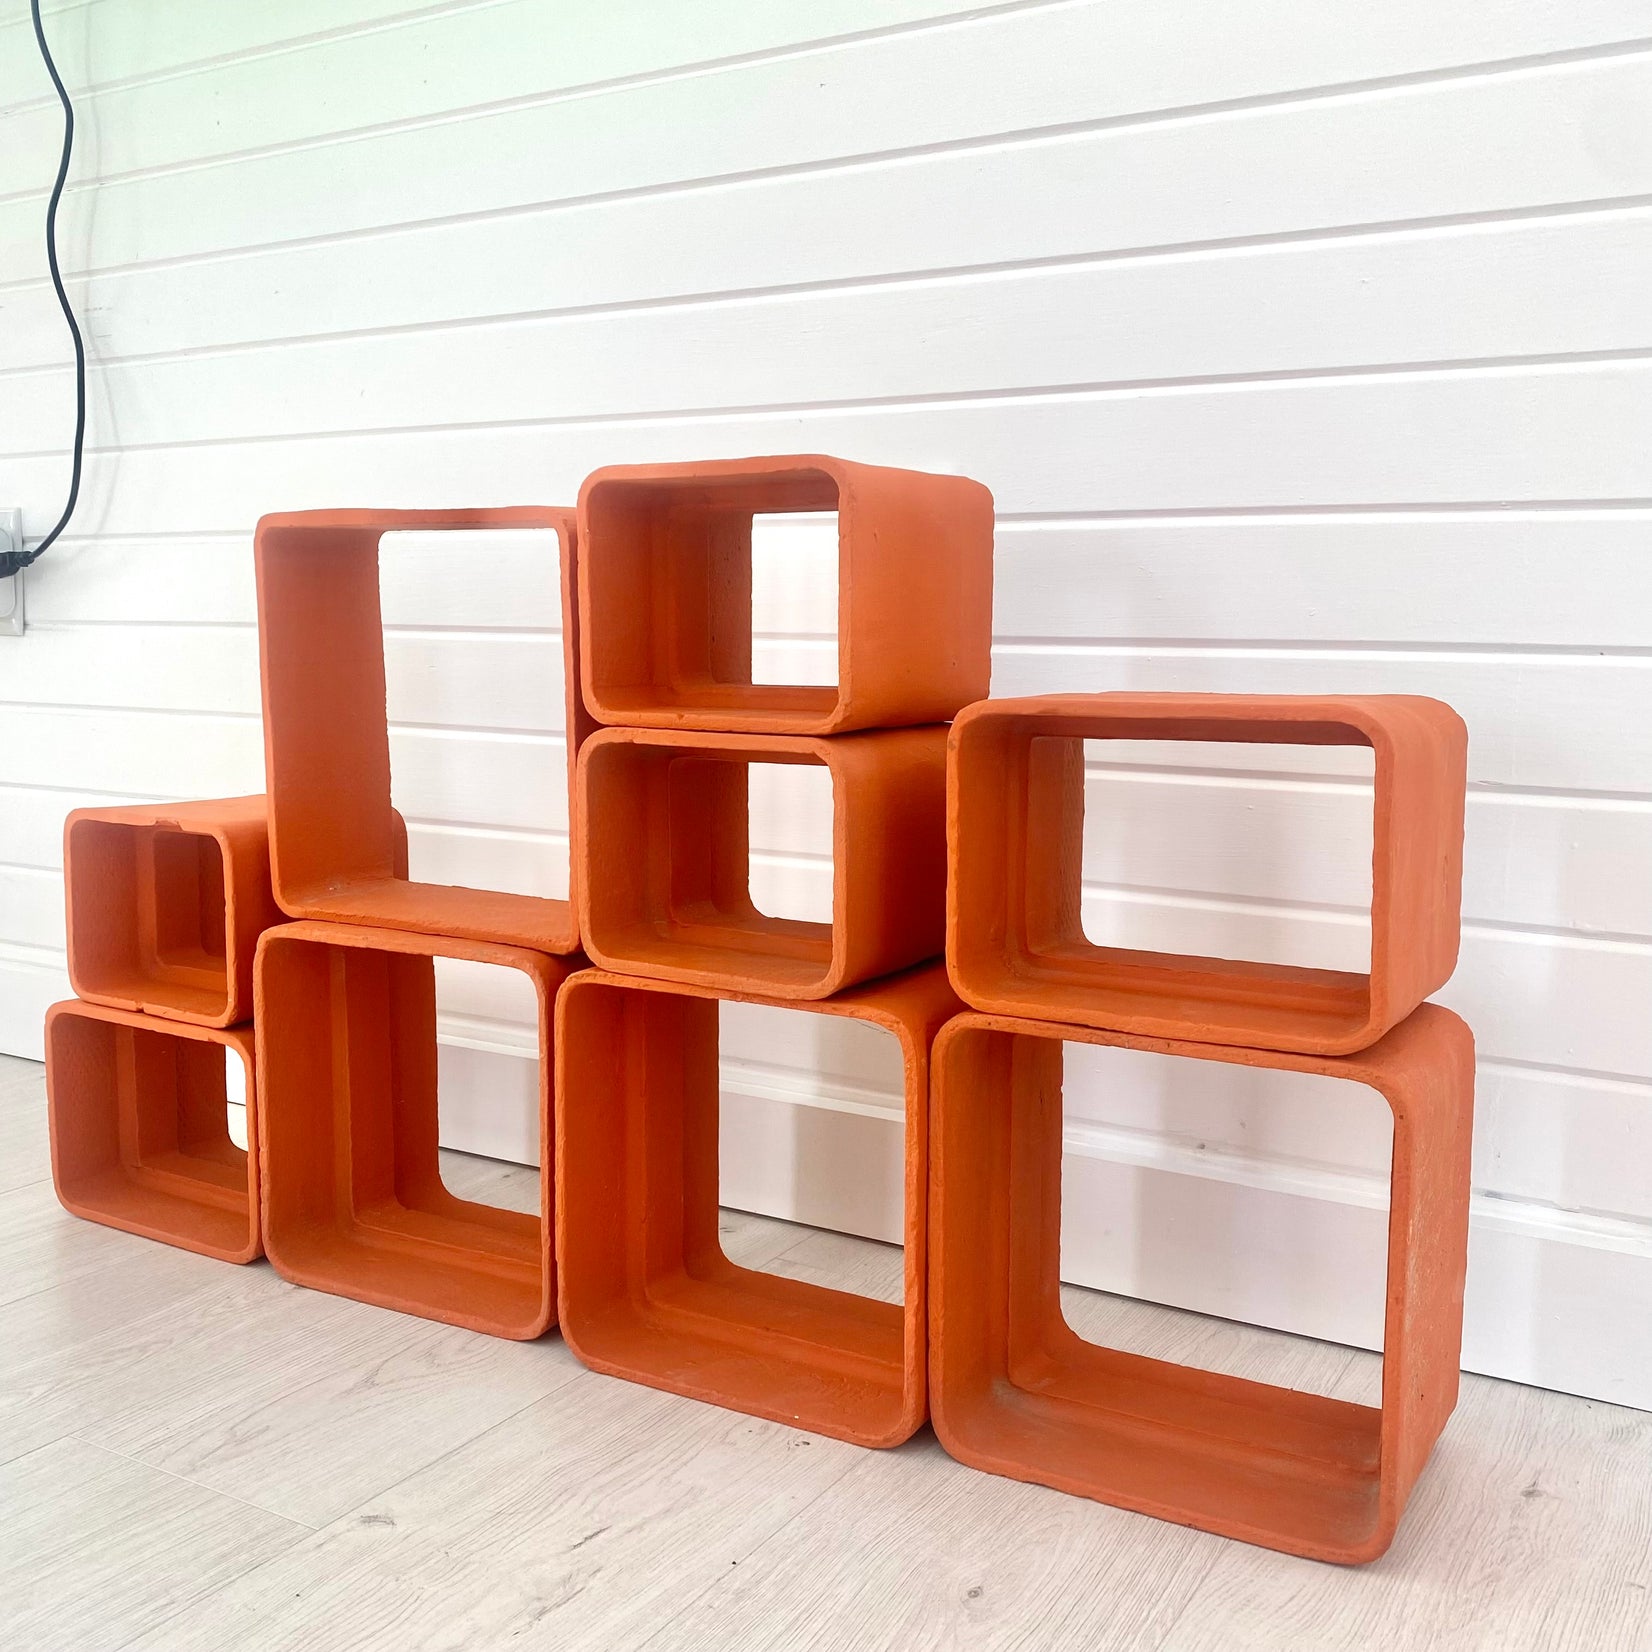 Willy Guhl Orange Concrete Bookcase, 1960s Switzerland